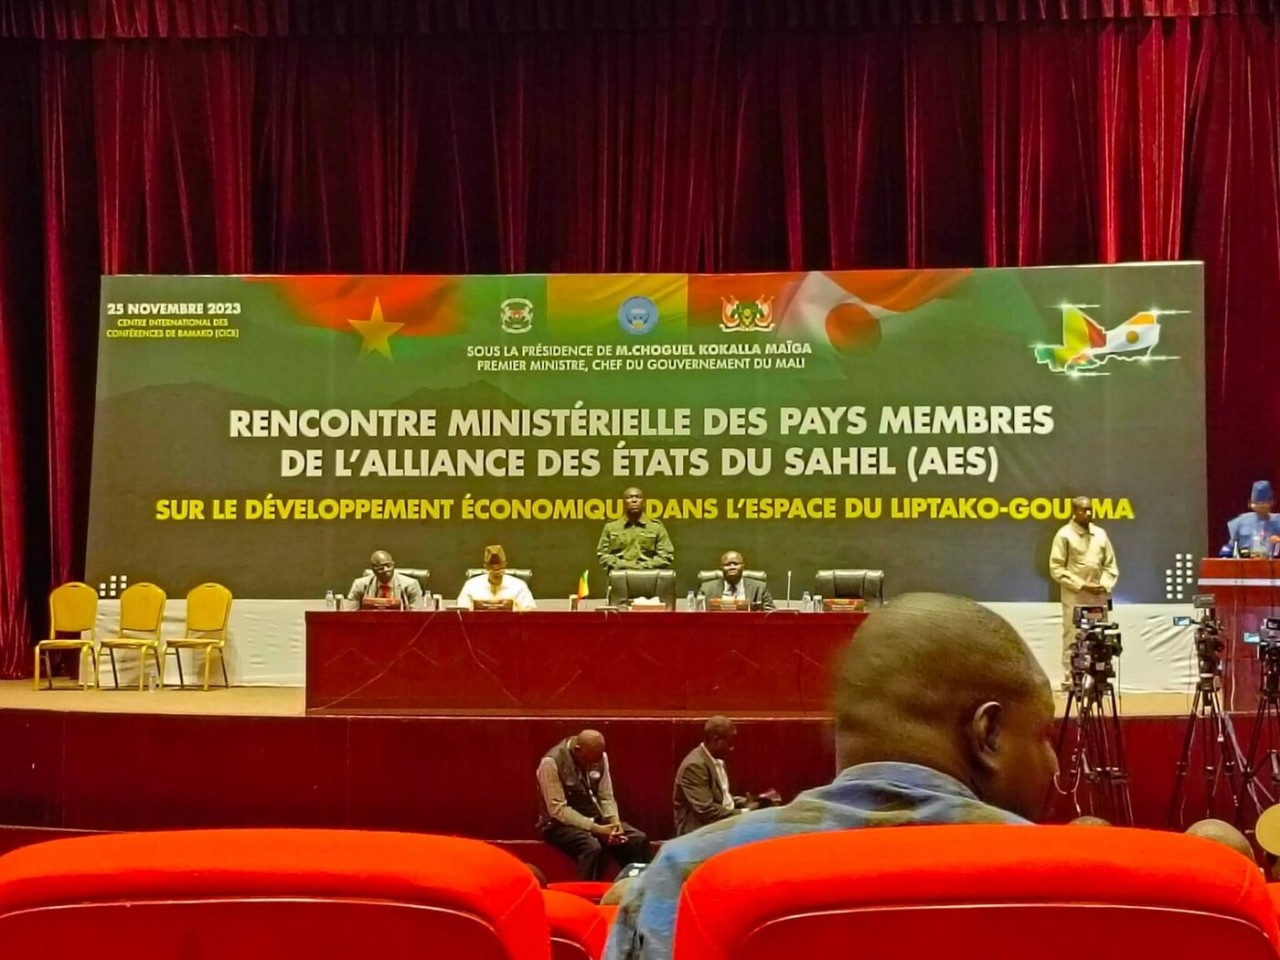 รัฐมนตรีกระทรวงเศรษฐกิจและการค้าและผู้เชี่ยวชาญจาก 3 ประเทศในแอฟริกาตะวันตก รวมถึงบูร์กินาฟาโซ มาลี และไนเจอร์ พบกันที่บามาโก เมืองหลวงของมาลี เมื่อวันที่ 25 พฤศจิกายน  (ที่มา: Wadr)